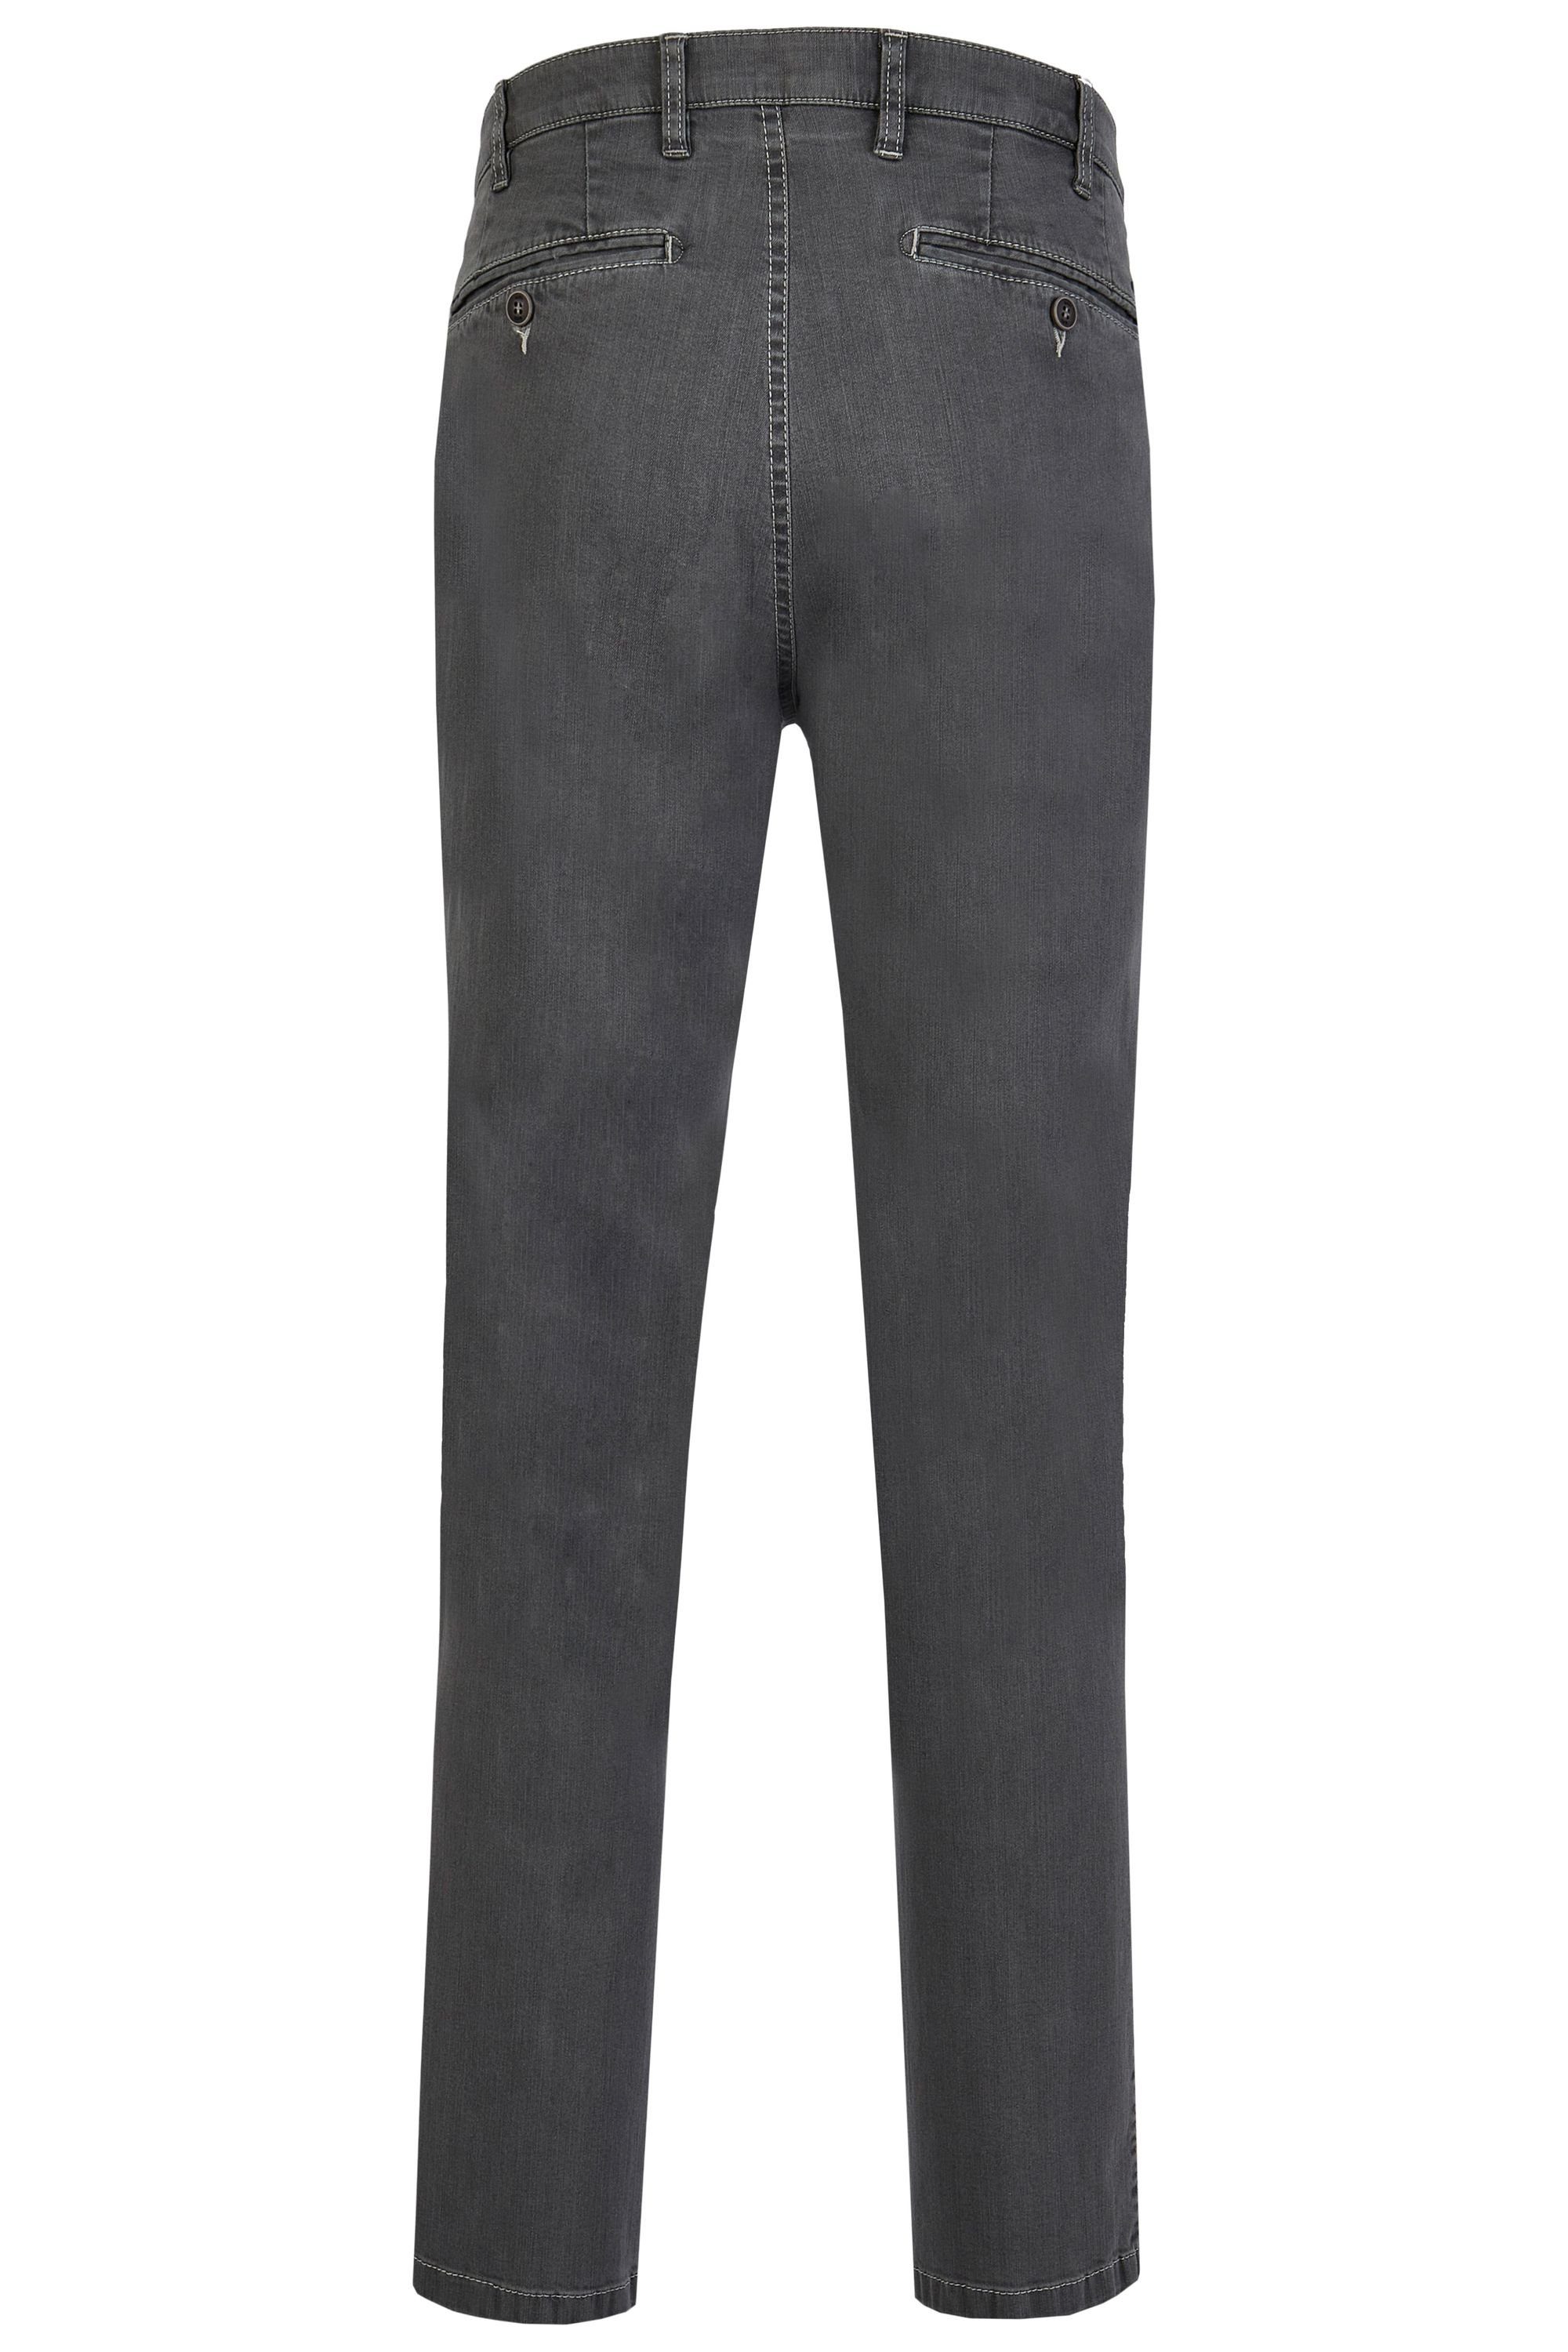 Fit Stretch Perfect Modell Herren High Jeans Bequeme (54) aus aubi: aubi grey Jeans Sommer Flex Baumwolle 526 Hose